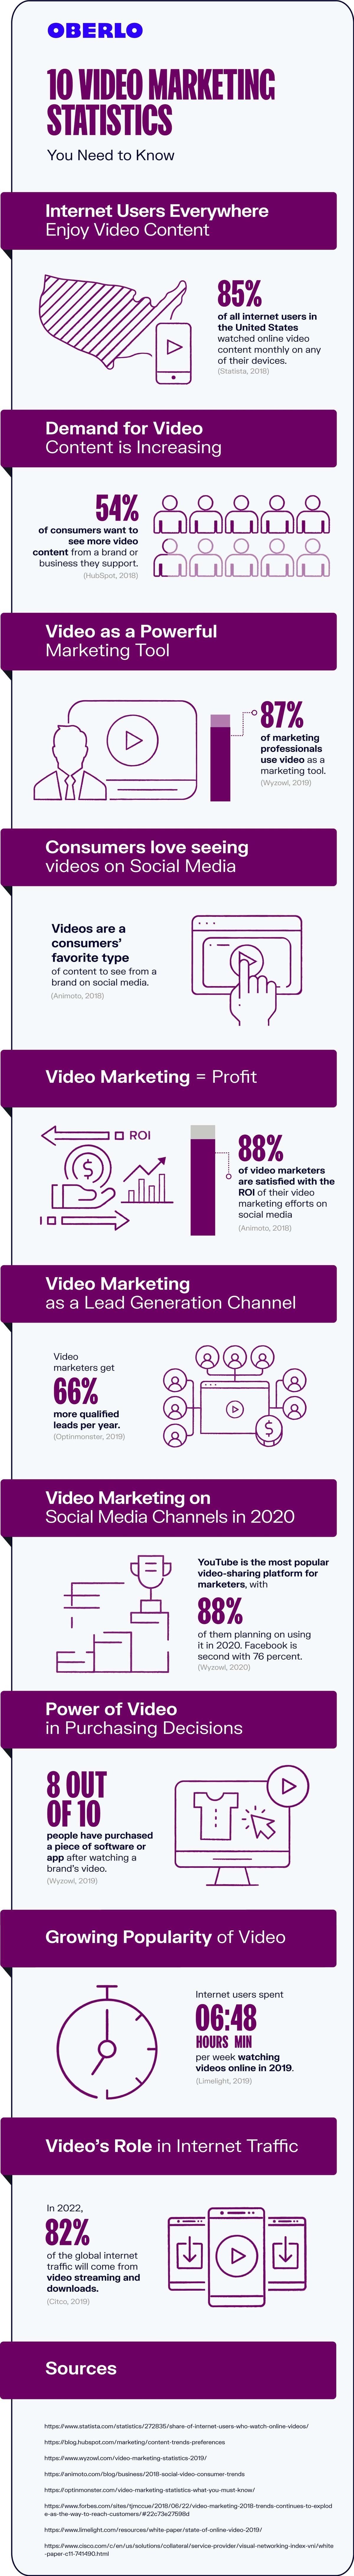 Estadísticas de video marketing 2020